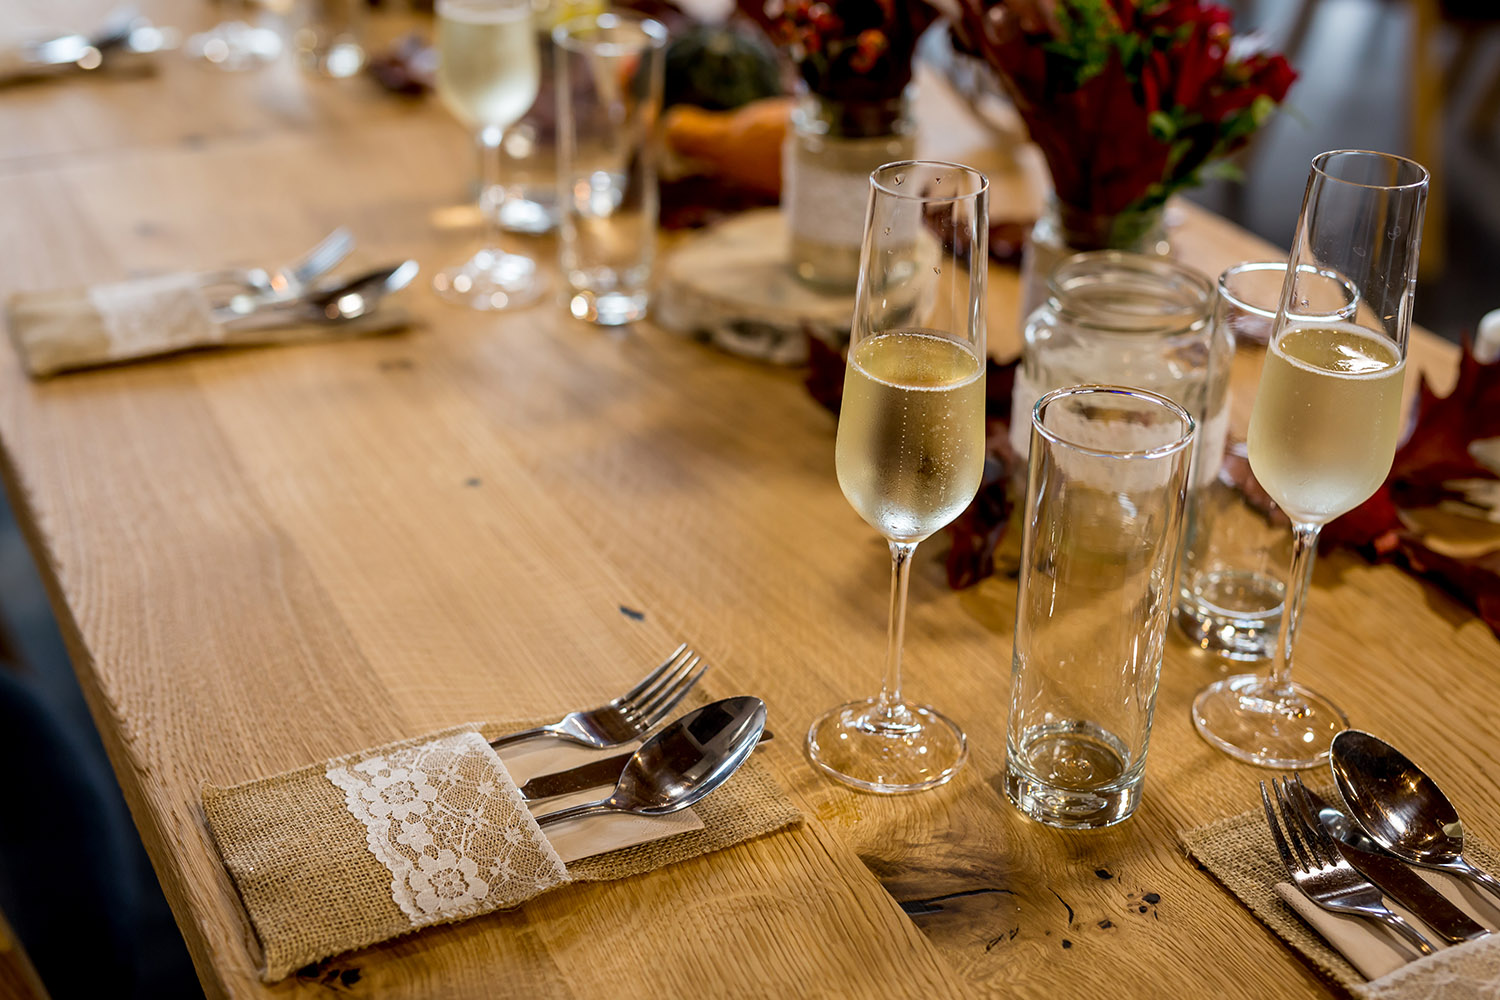 Slavnostně prostřený stůl se sklenicí šampaňského.